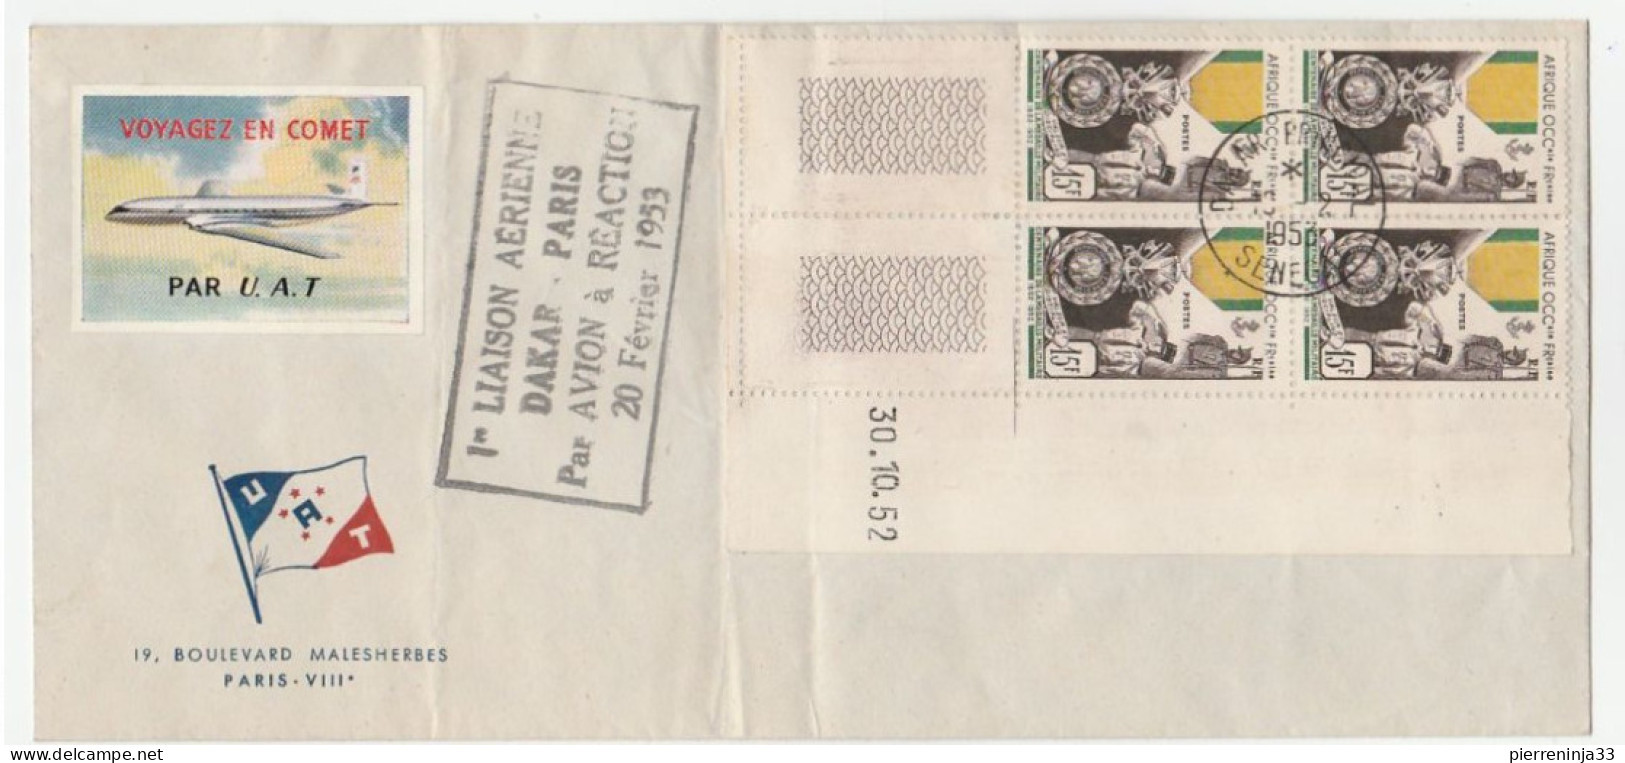 Lettre Avec Cachet 1ère Liaison Aérienne Et Coin Daté "Médaille Militaire AOF" + Vignette Aviation, 1953 - Covers & Documents